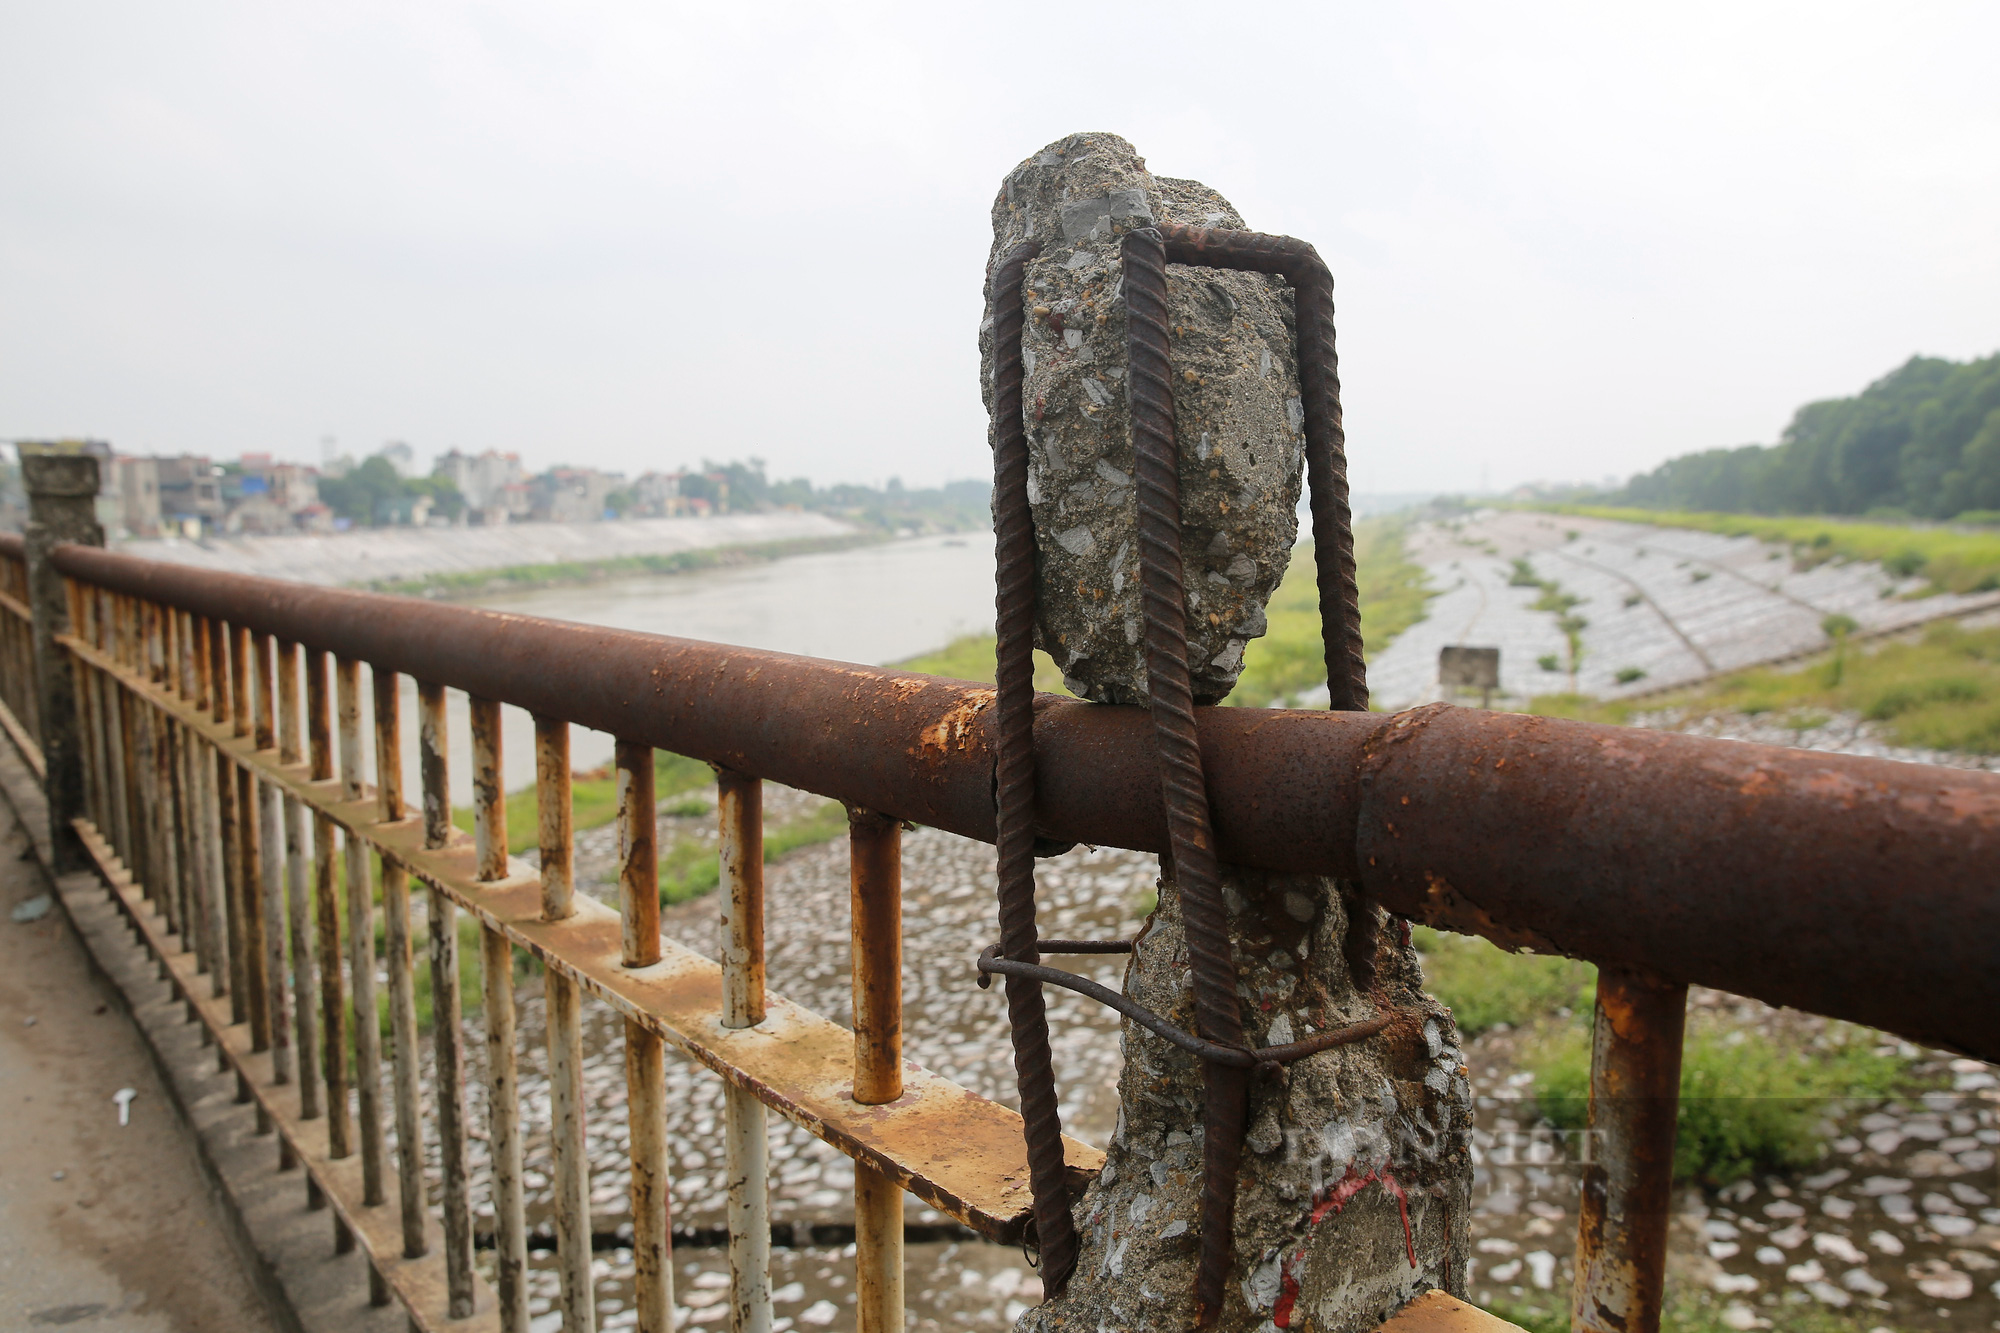 Hà Nội: Cận cảnh cây cầu xuống cấp nghiêm trọng được đề xuất xây mới trị giá gần 1800 tỷ đồng - Ảnh 6.